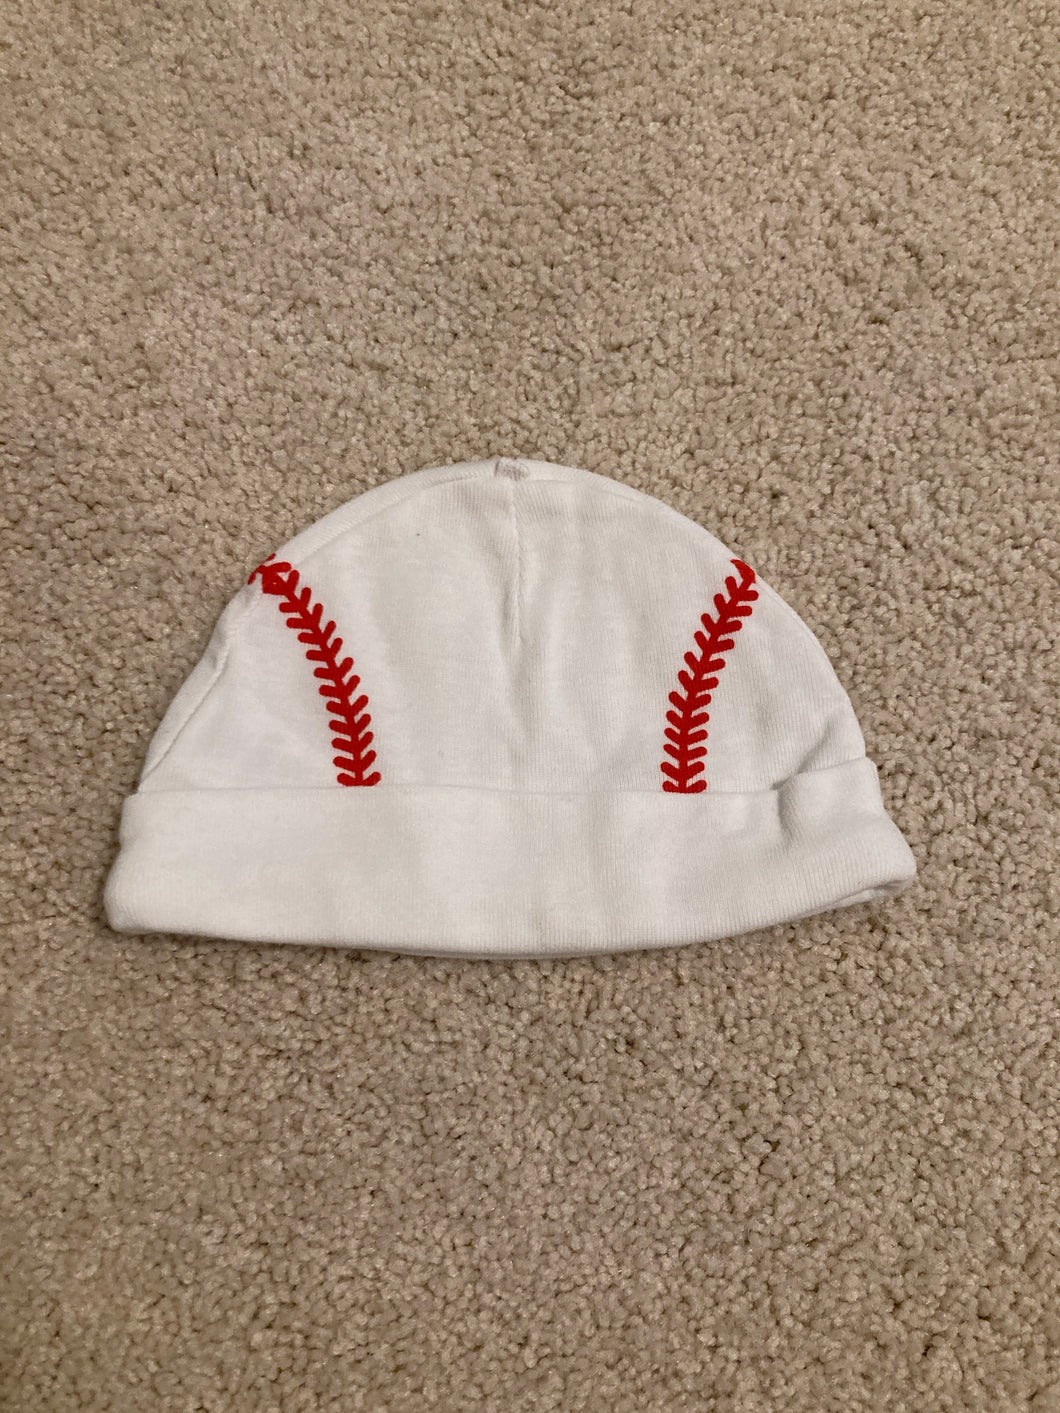 Baseball Hat 6 Months 6 months